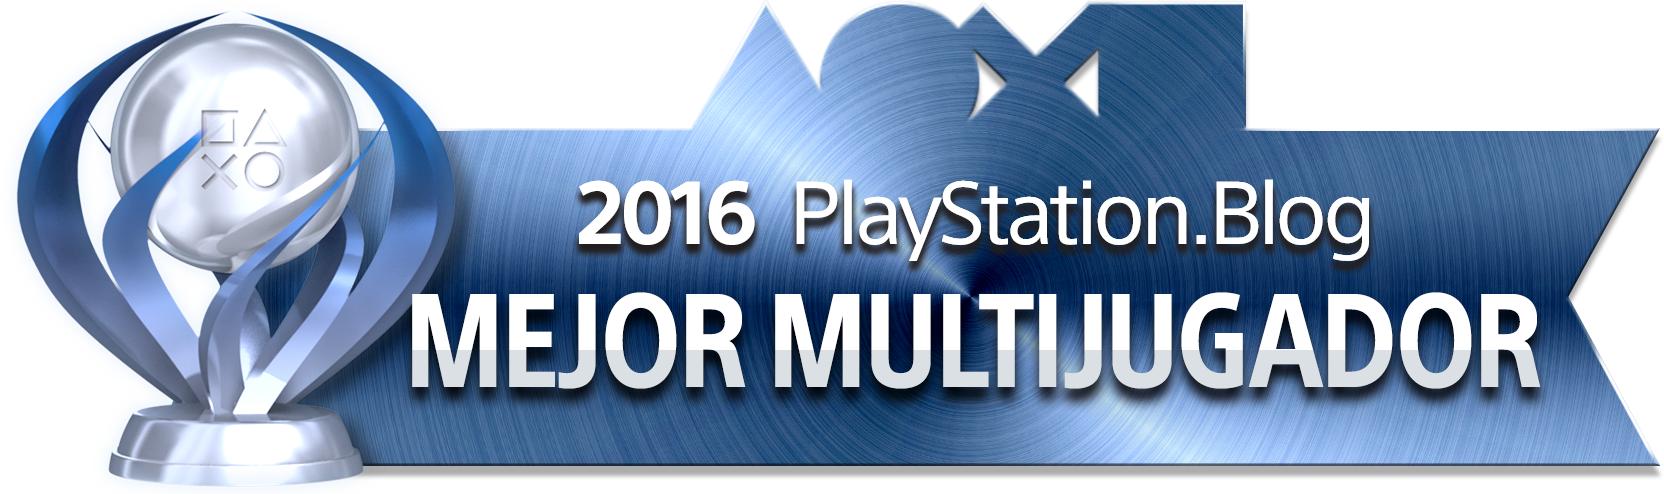 Best Multiplayer - Platinum